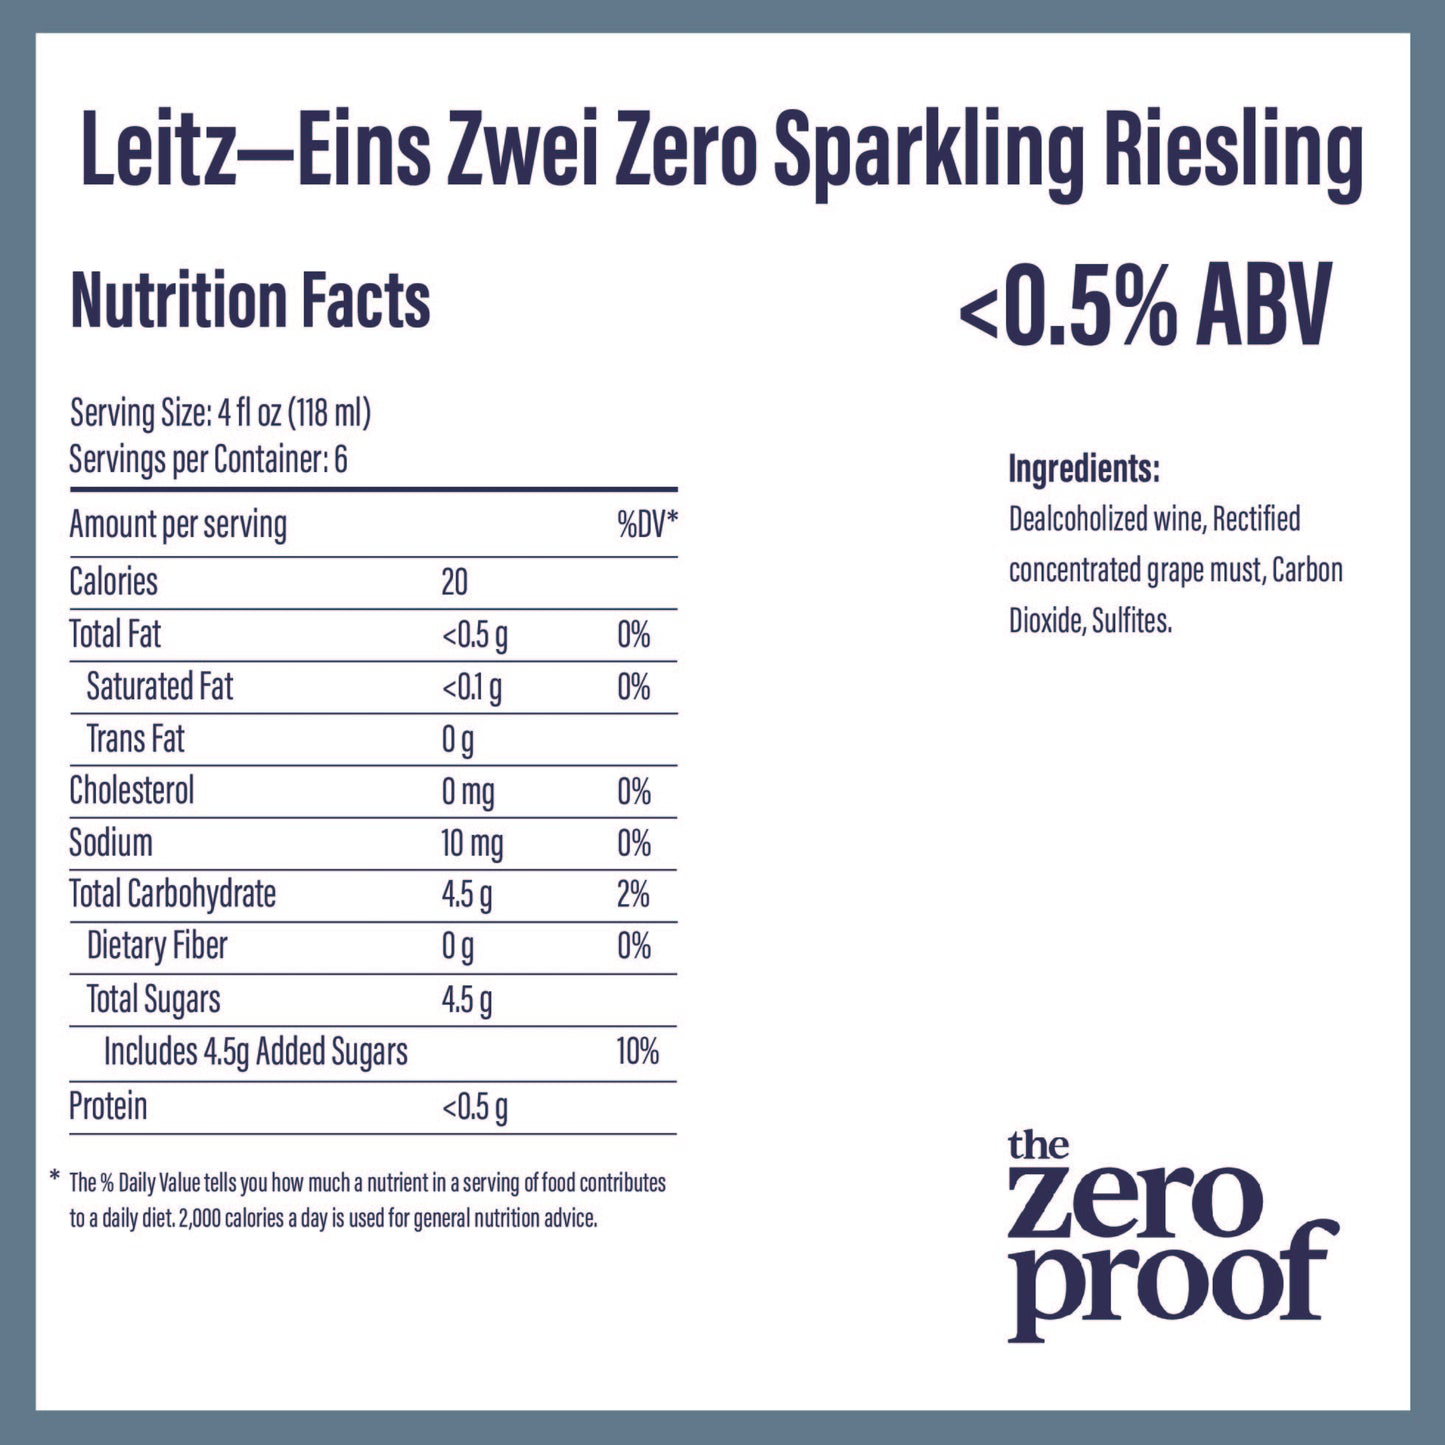 Leitz - Eins Zwei Zero Sparkling Riesling